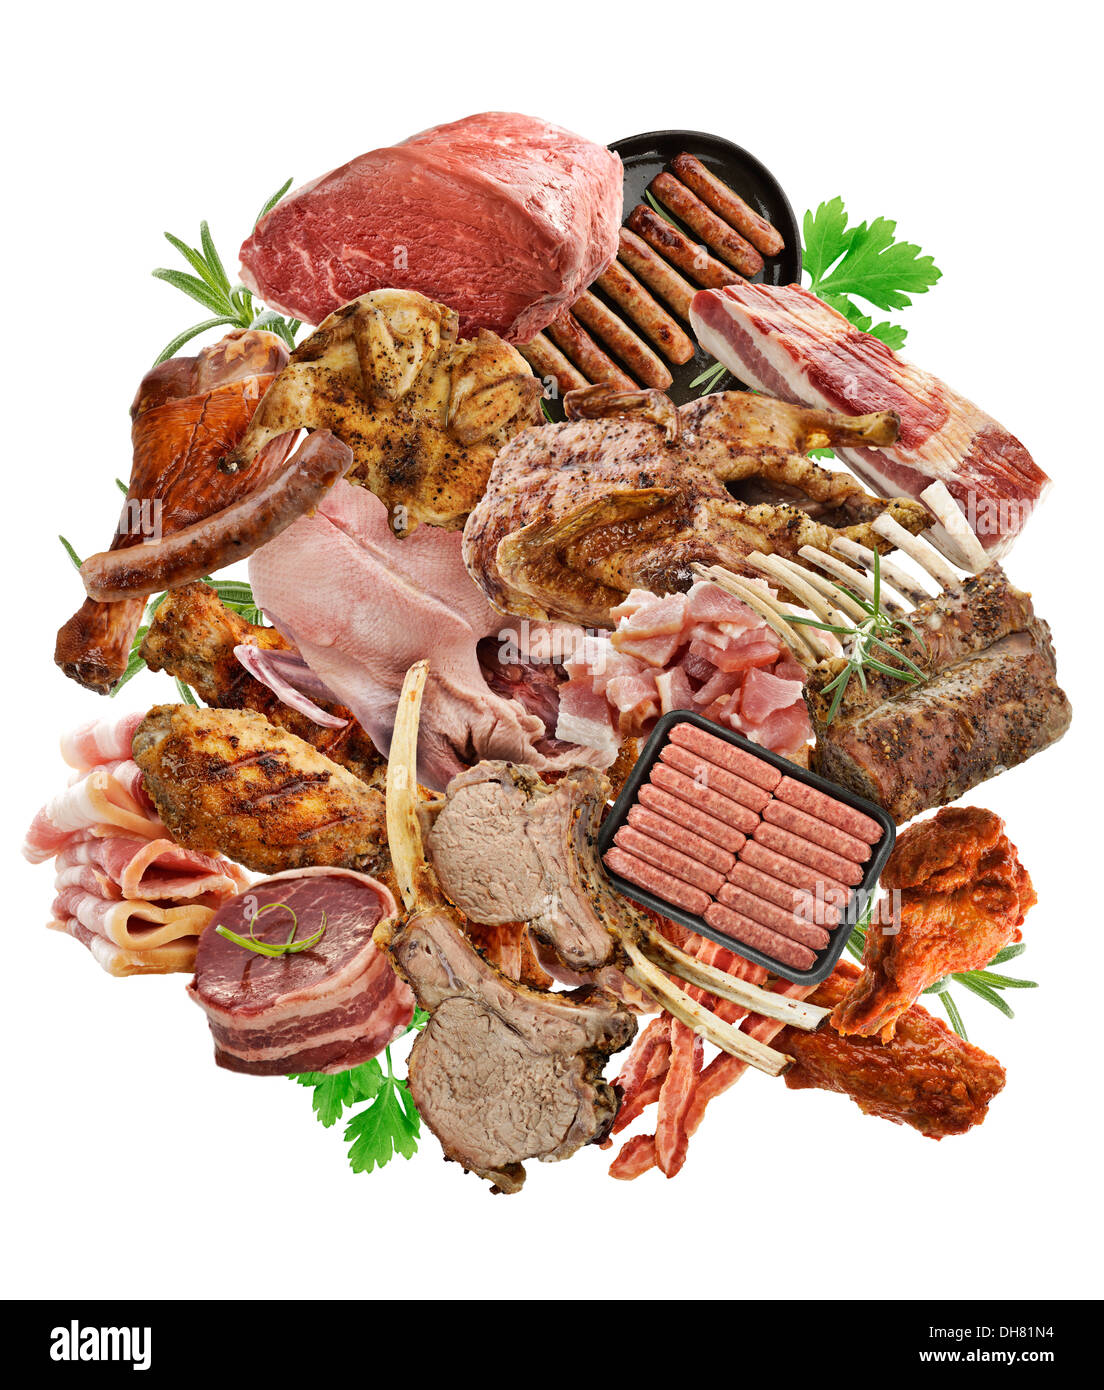 Assortiment de produits à base de viande sur fond blanc Banque D'Images